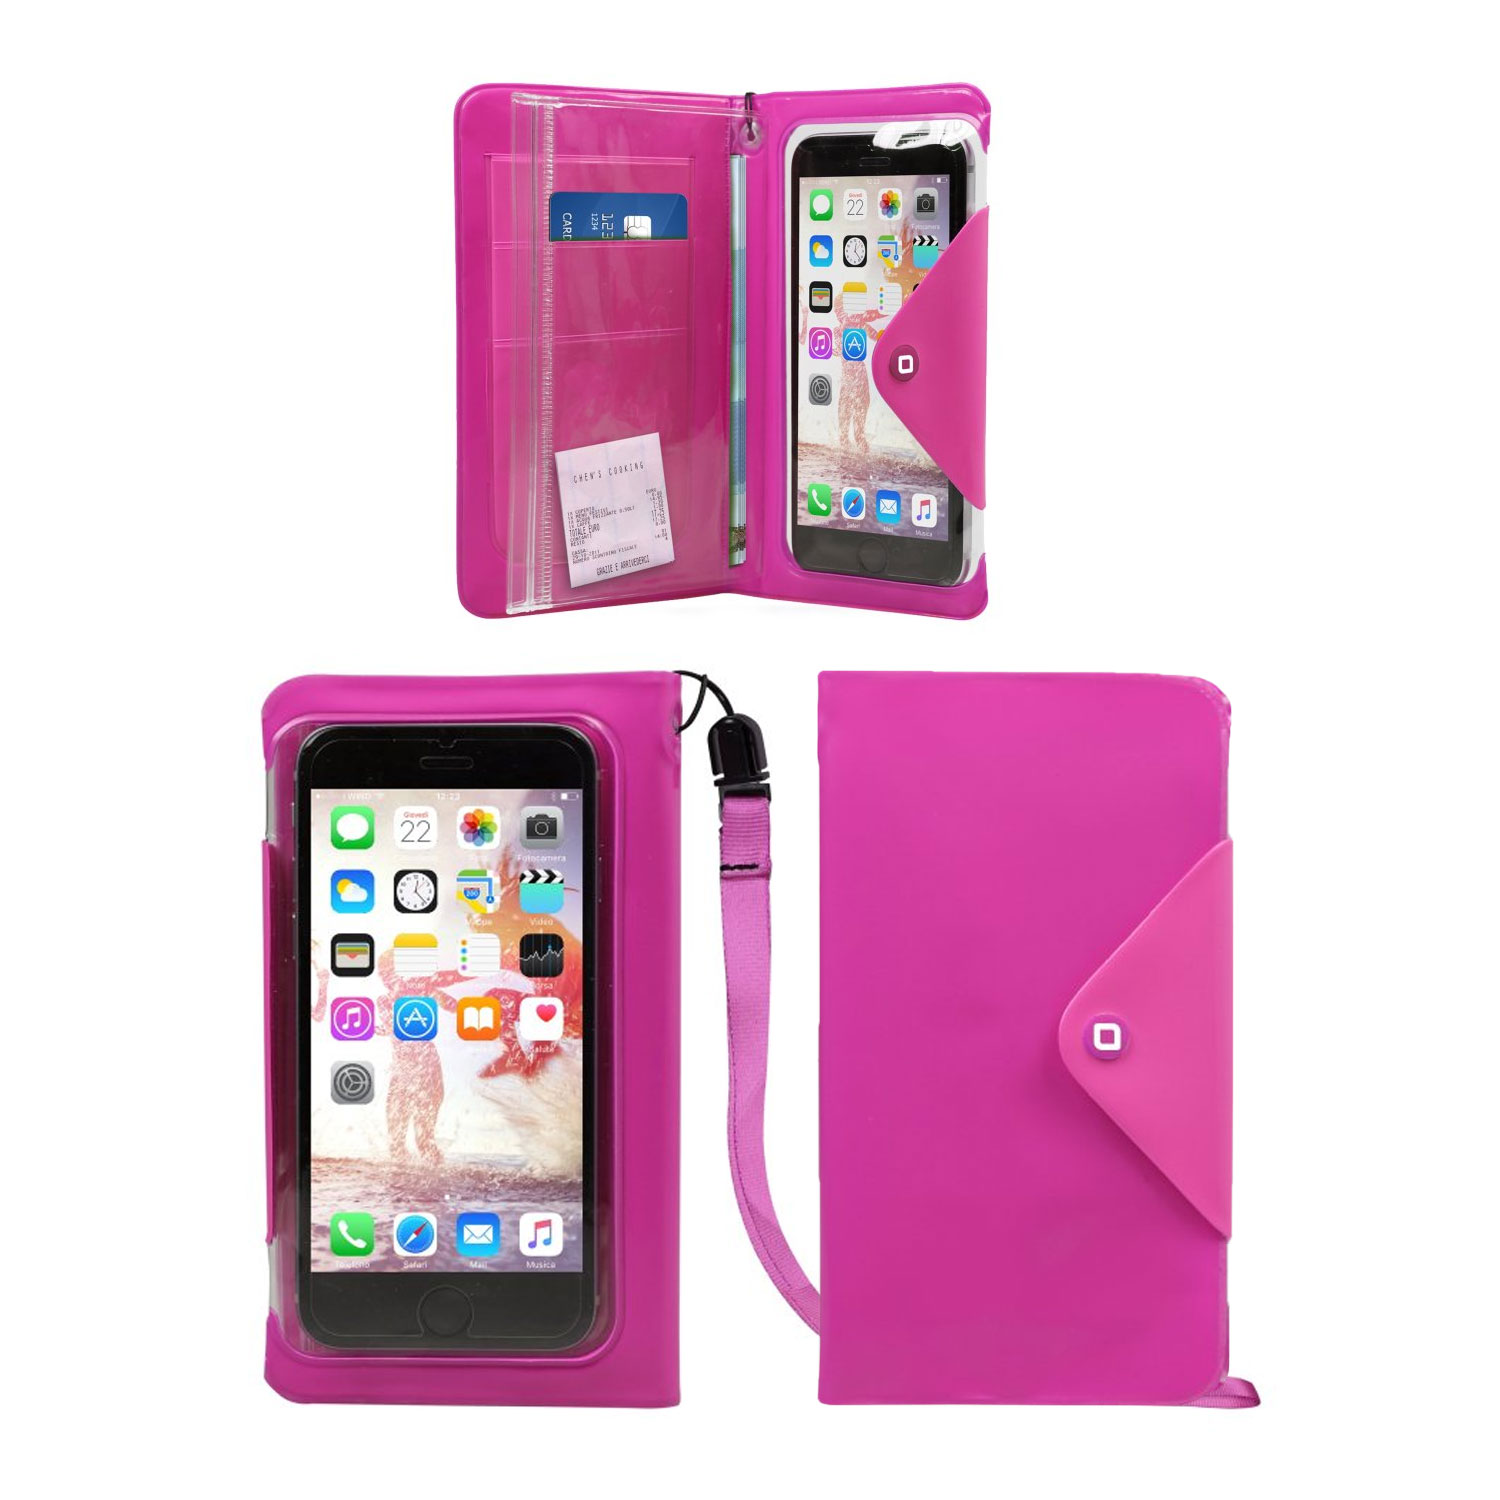 spritzwassergeschütze aufklappbare Smartphone-Tasche bis 5 Zoll, transparent/ pink